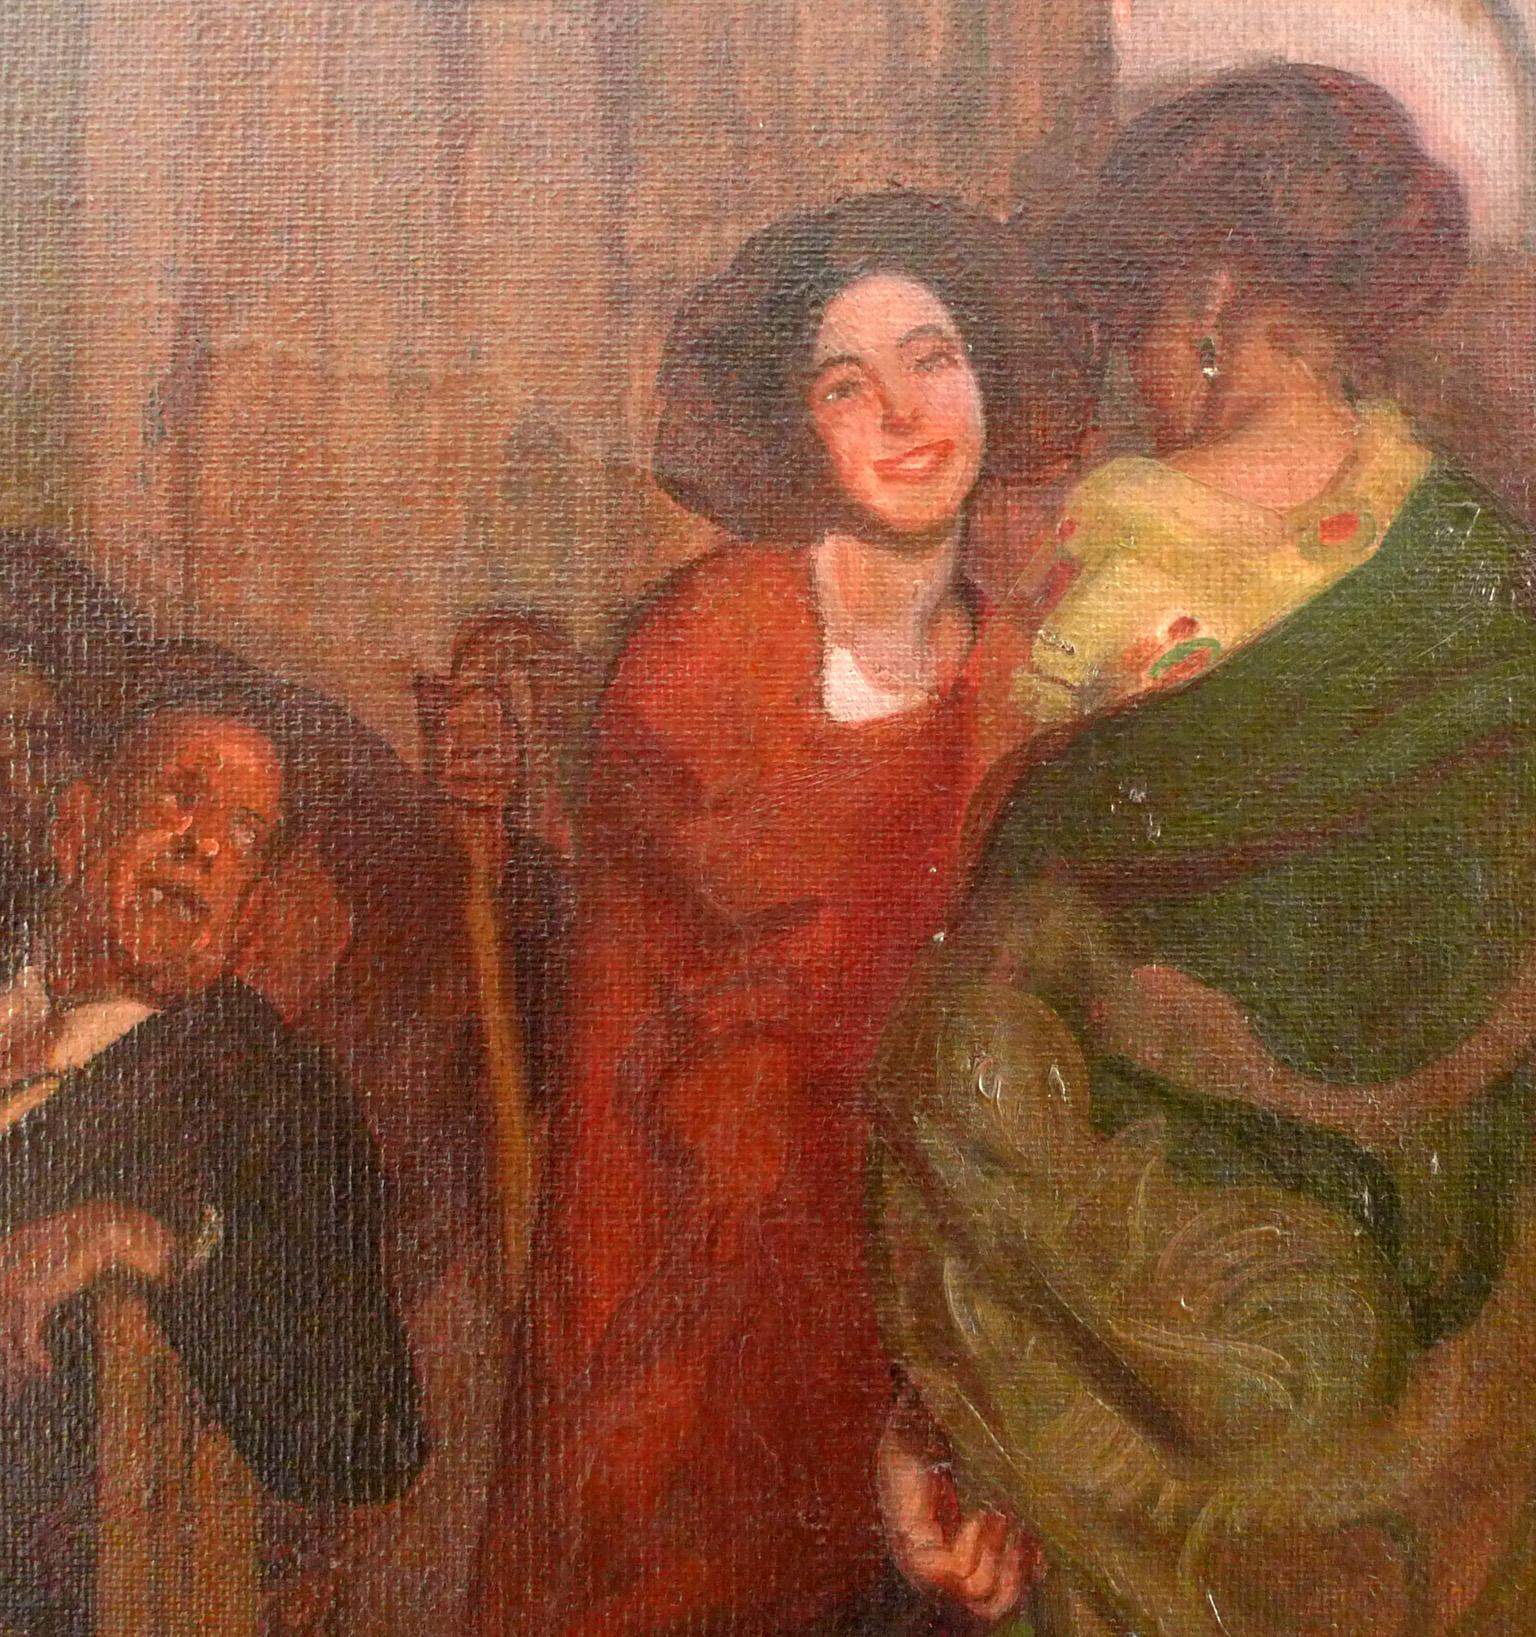 Día de mercado, Oil on Canvas by José María López Mezquita 3